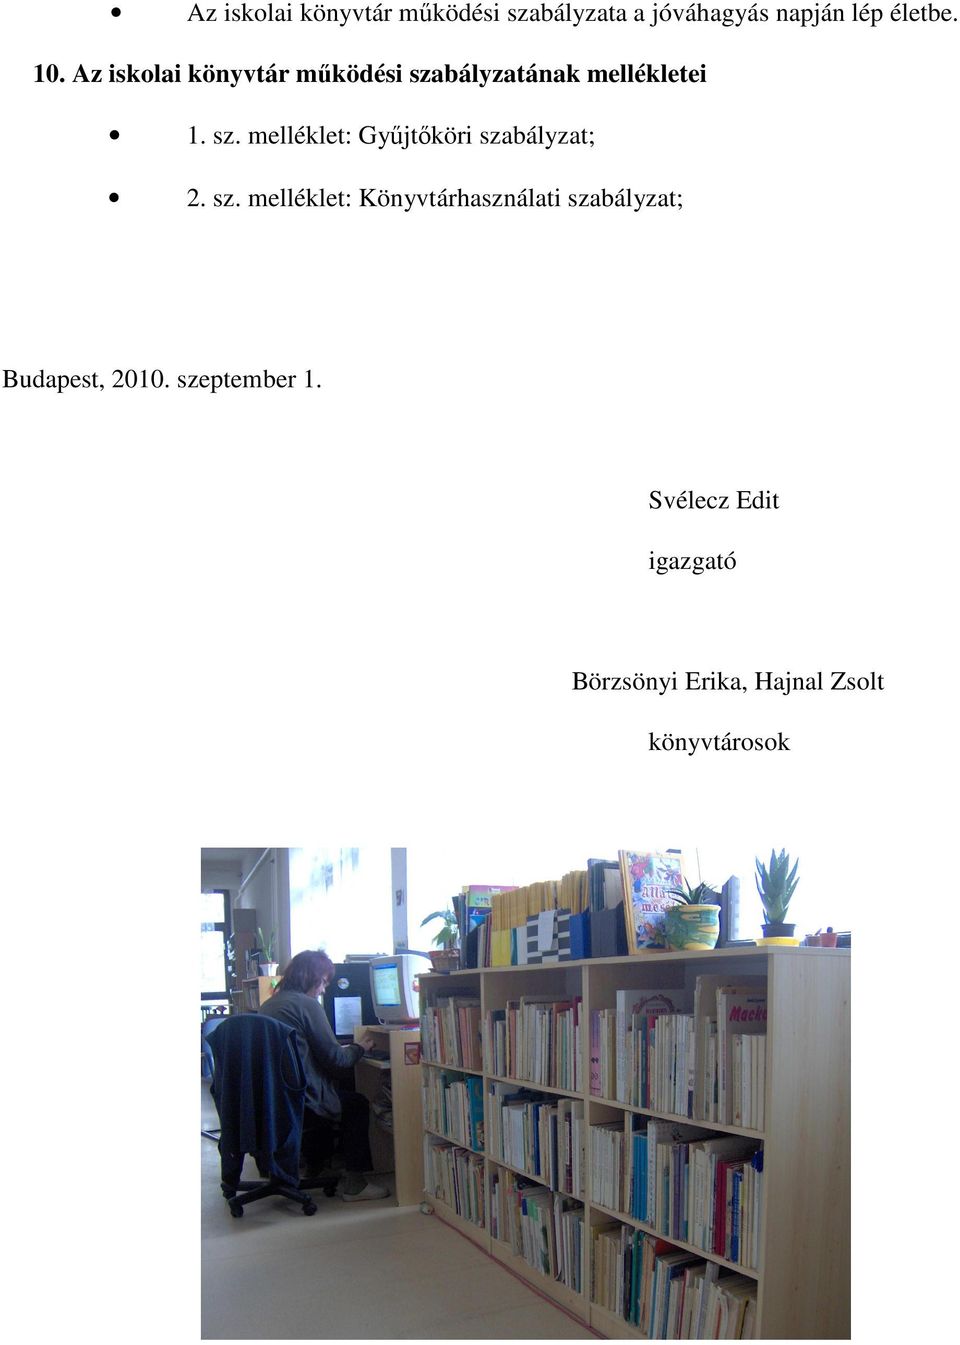 sz. melléklet: Könyvtárhasználati szabályzat; Budapest, 2010. szeptember 1.